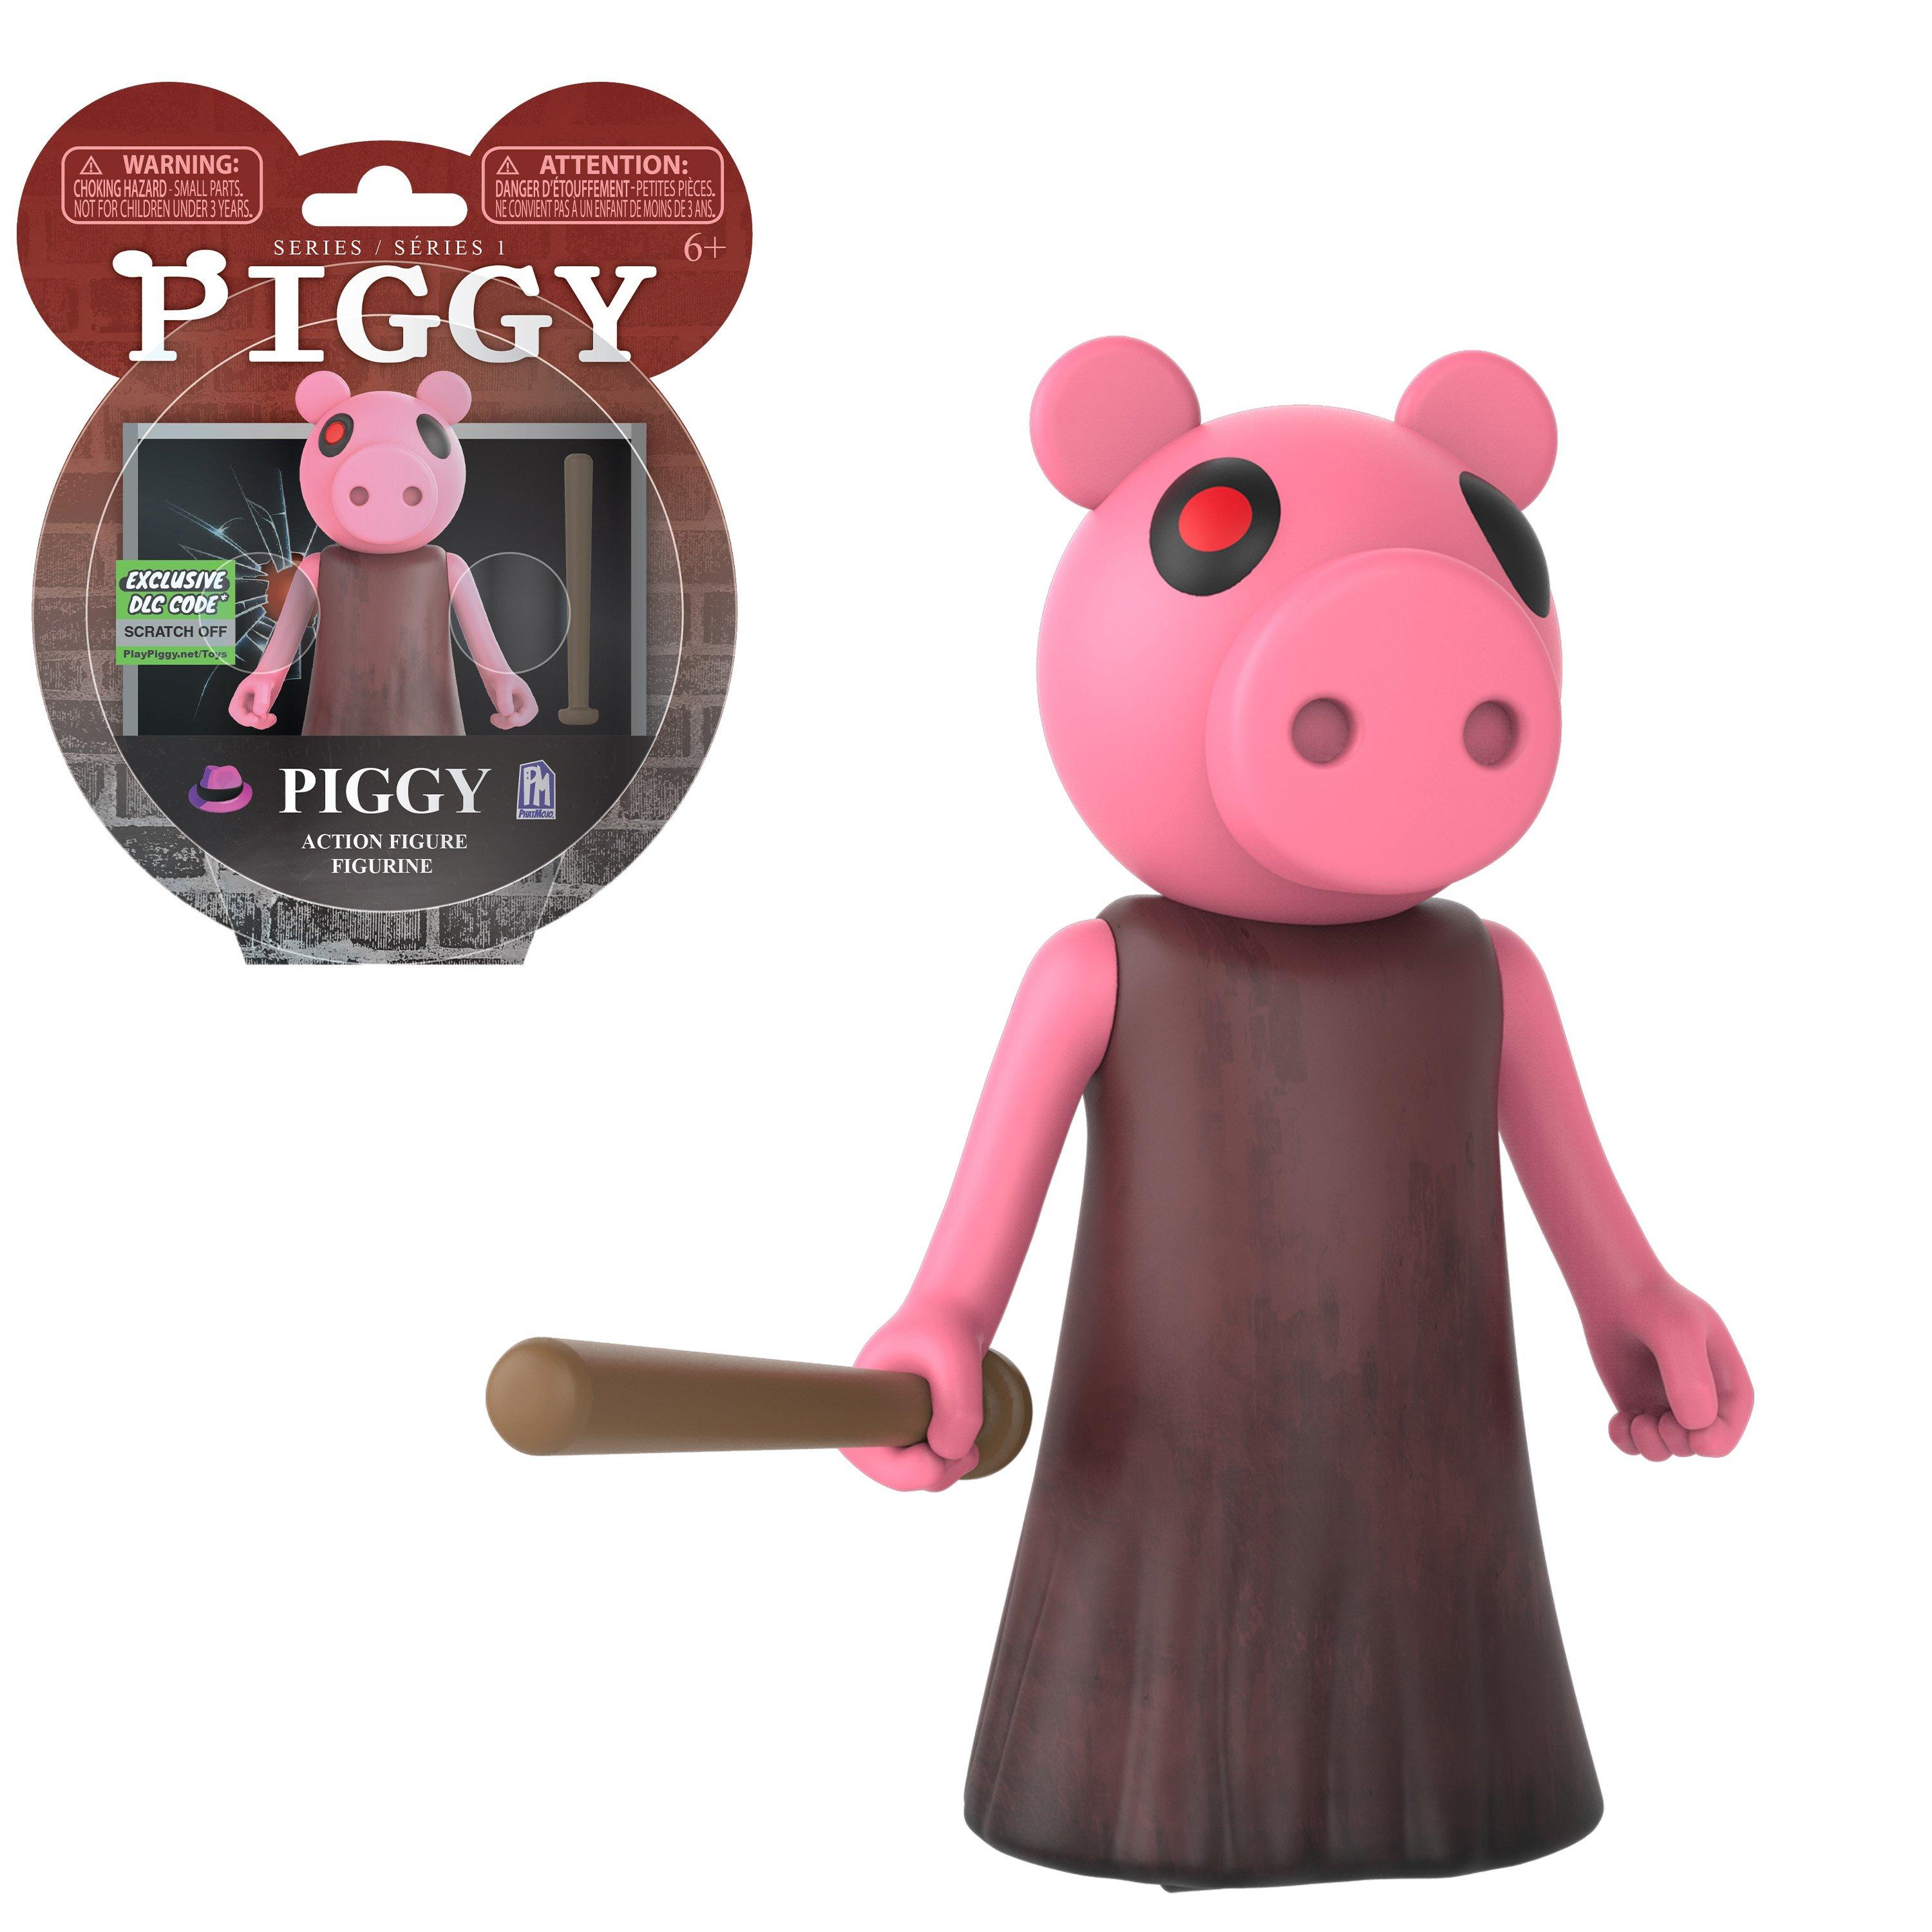 Piggy Piggy Series 1 Action Figure Gamestop - show me roblox toys